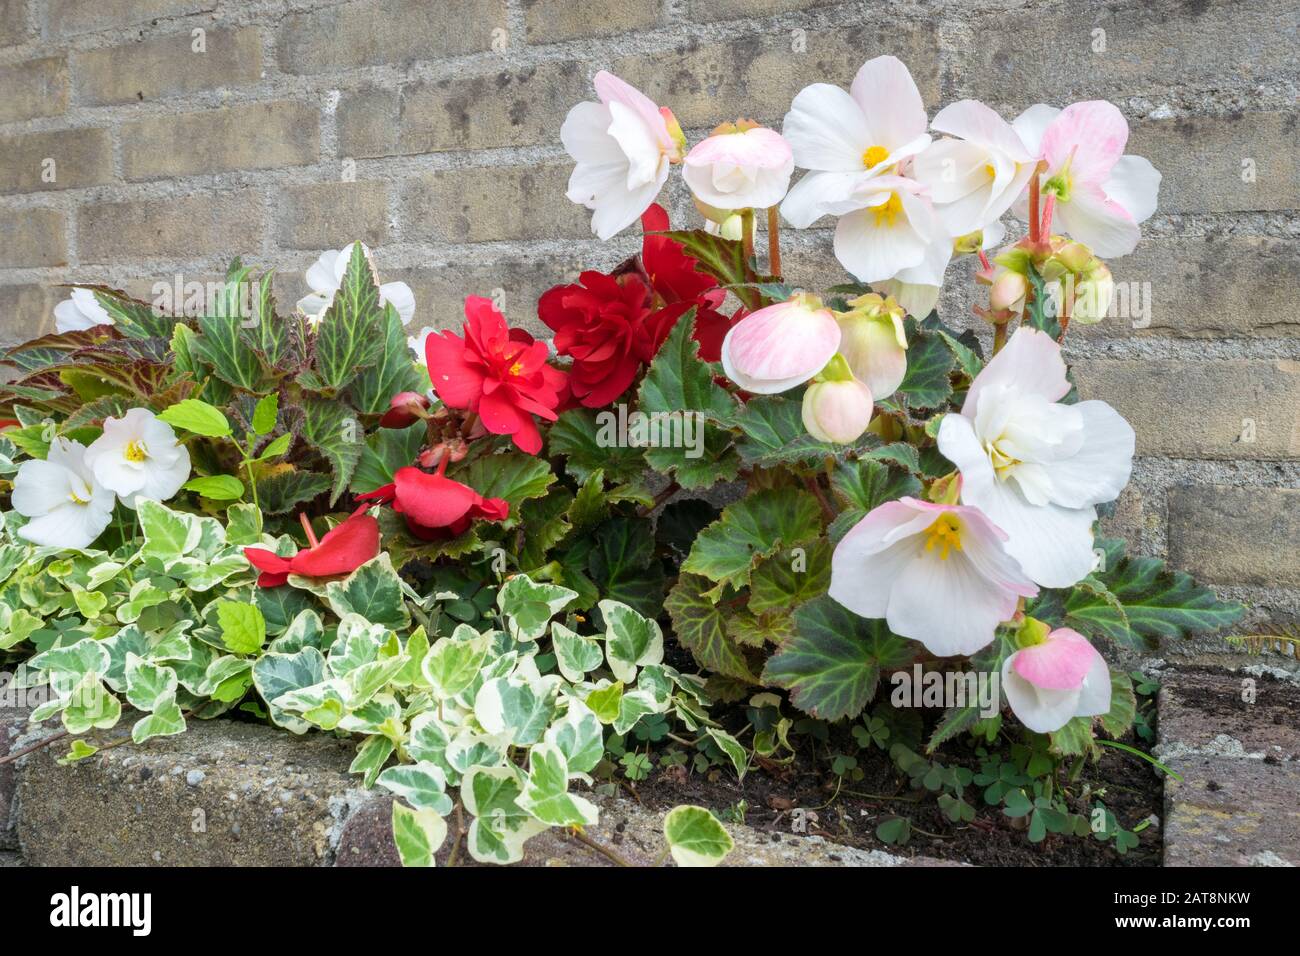 Begonia tuberosa con flores de color blanco, rojo y rosa. Jardín urbano con  Begonia e Ivy (Hedera Helix) creciendo en lecho de flores cerca de la pared  de ladrillo Fotografía de stock -